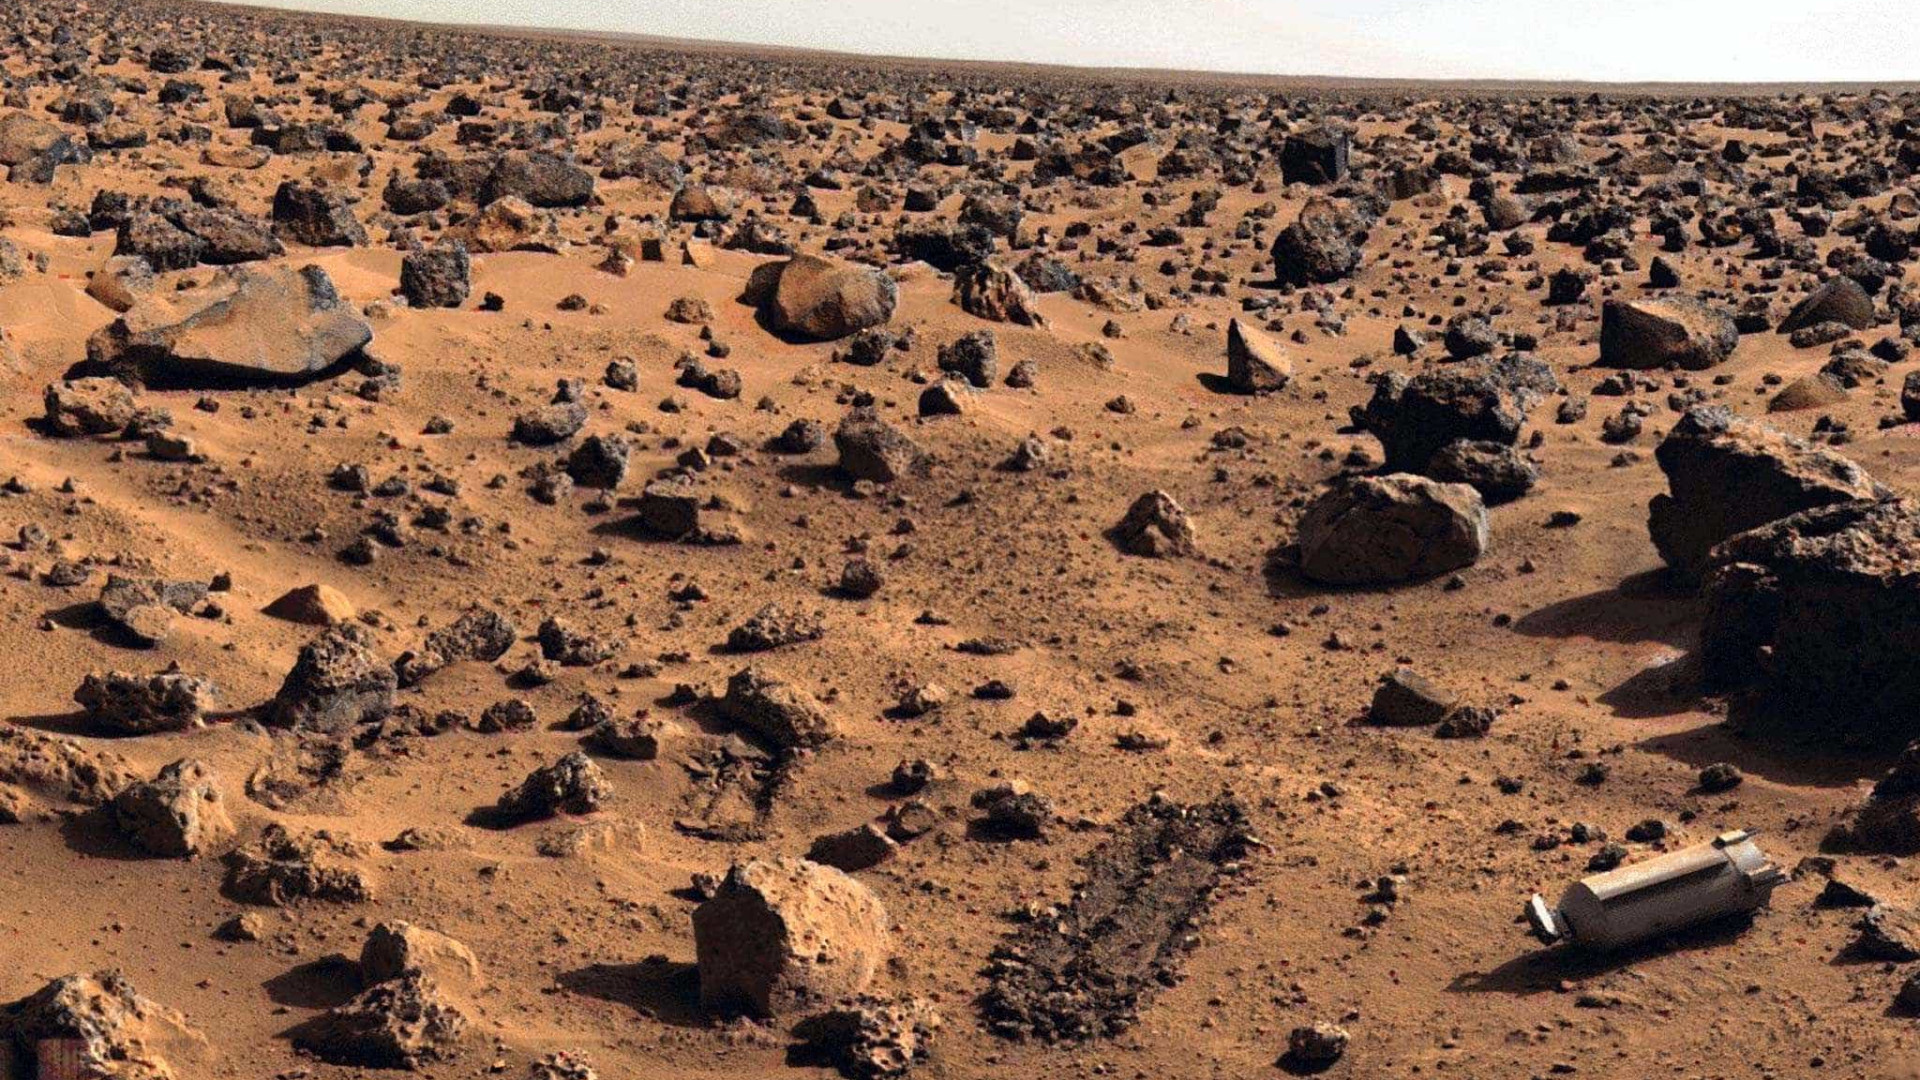 Astrônomos russos explicam oceanos
quentes em Marte